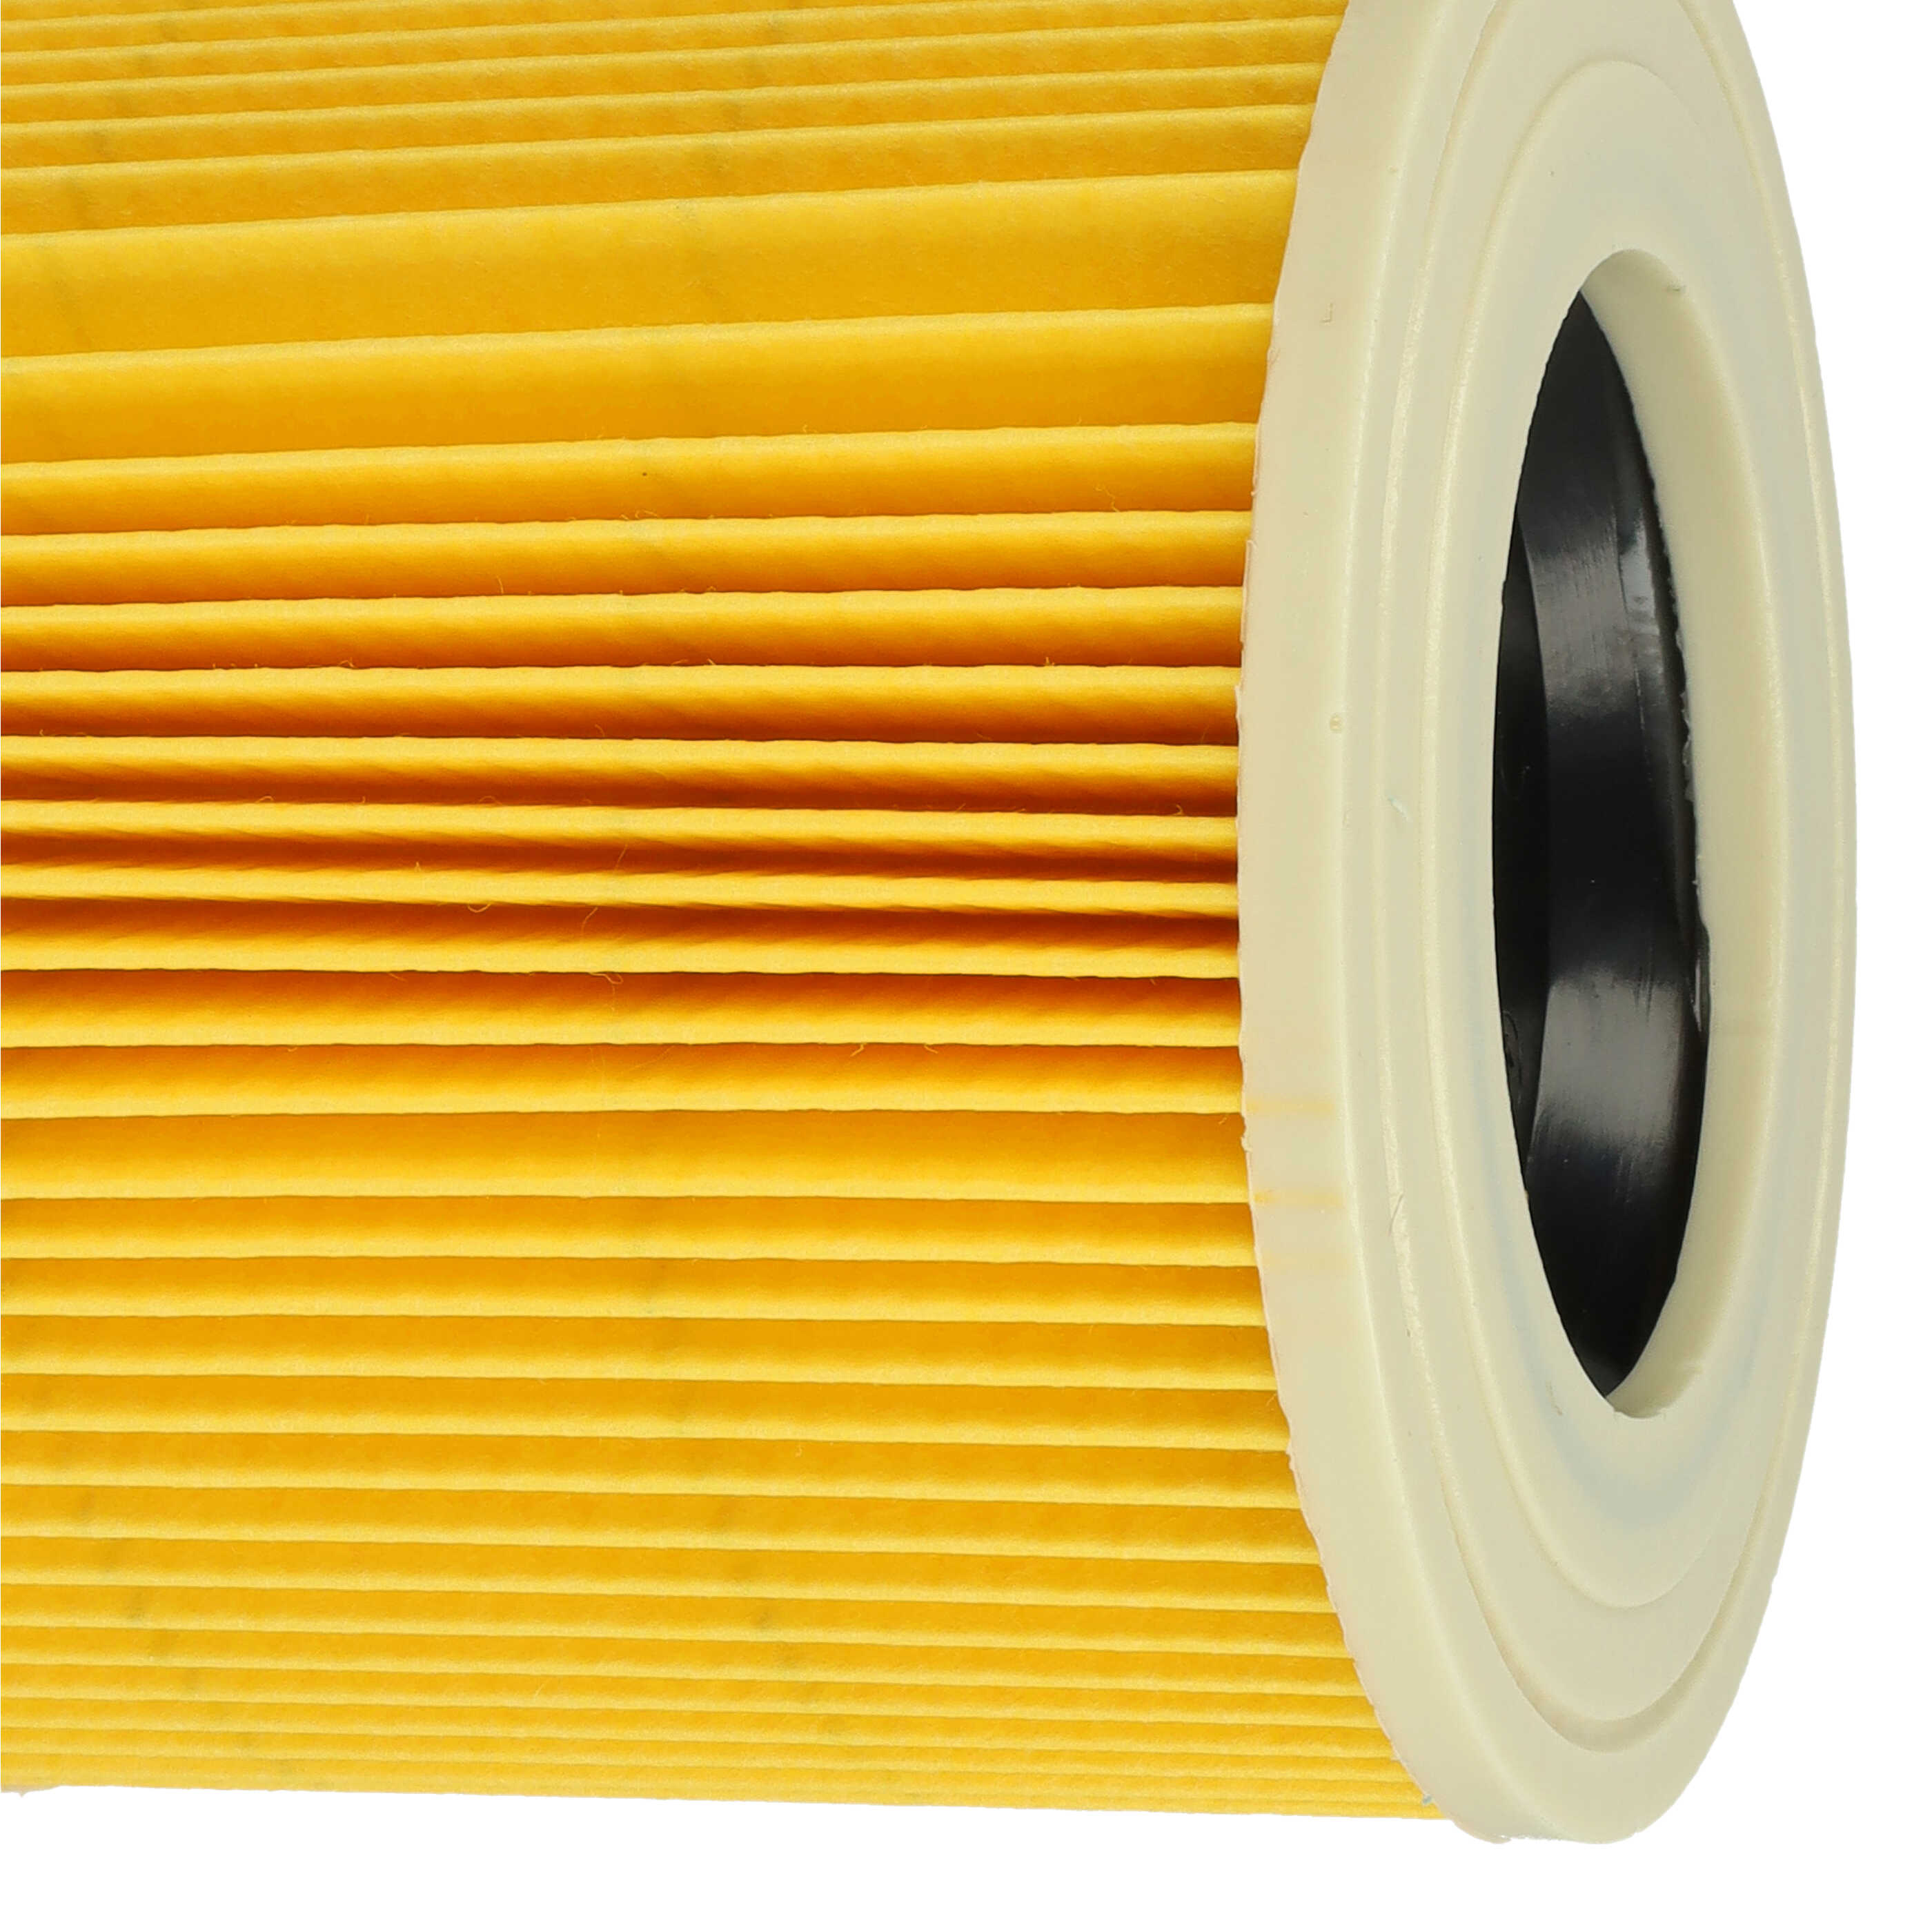 Filtro sostituisce Kärcher 2.863-303.0, 6.414-552.0, 6.414-547.0 per aspirapolvere - filtro cartucce, giallo